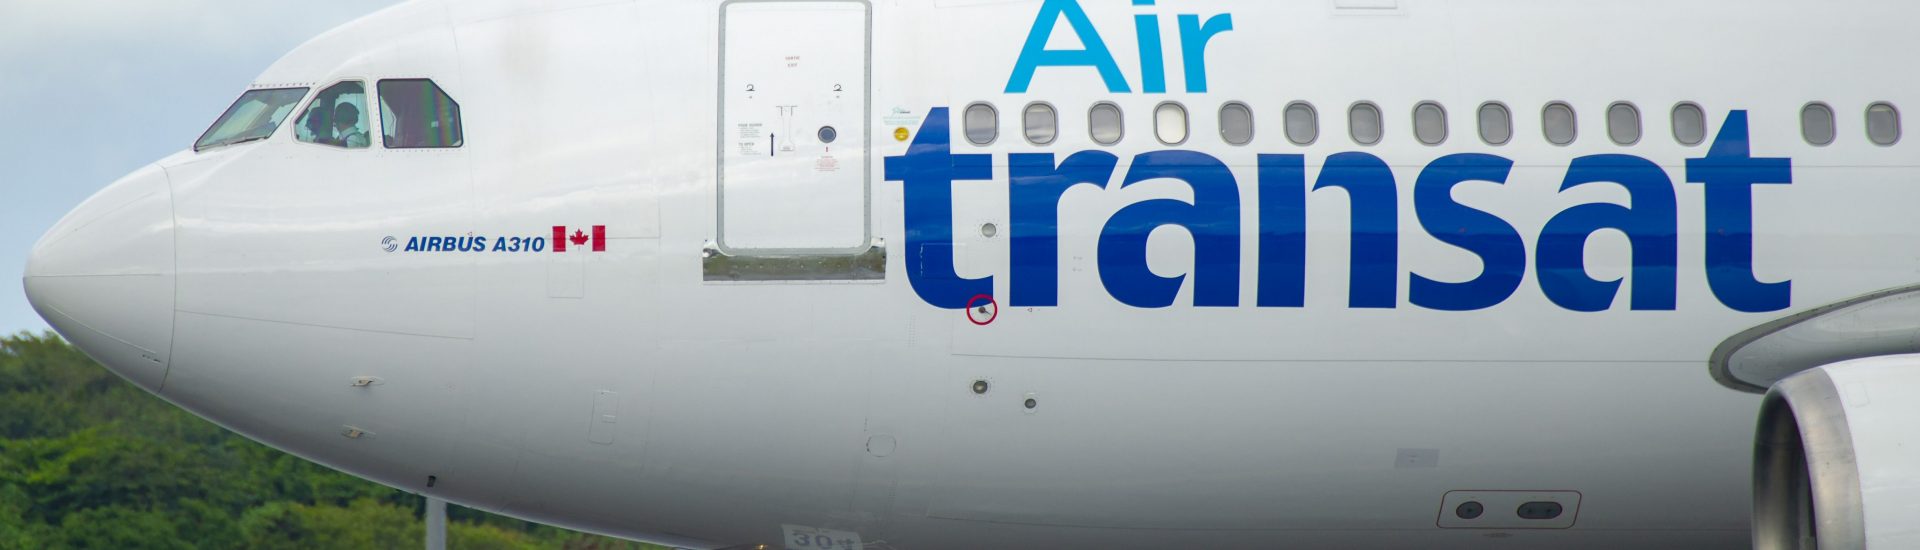 A310-300 Air Transat C-GSAT